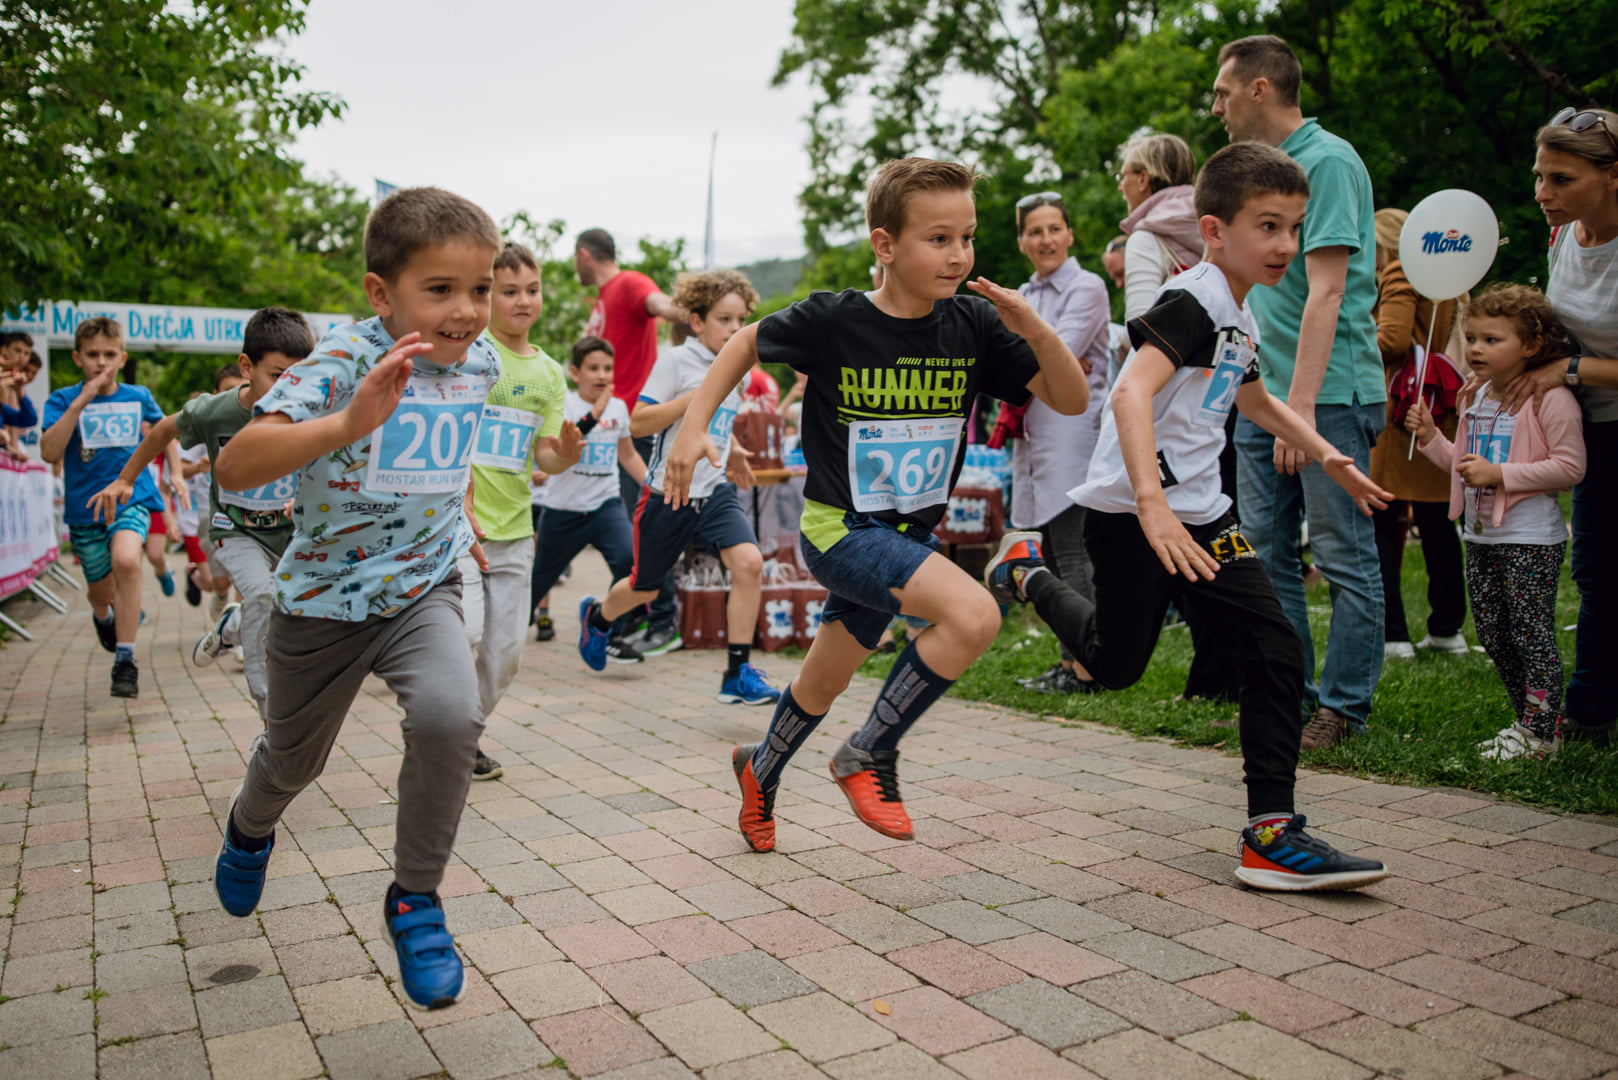 POKRETOM PROTIV OVISNOSTI: Monte utrka za djecu u Zrinjevcu 30. travnja